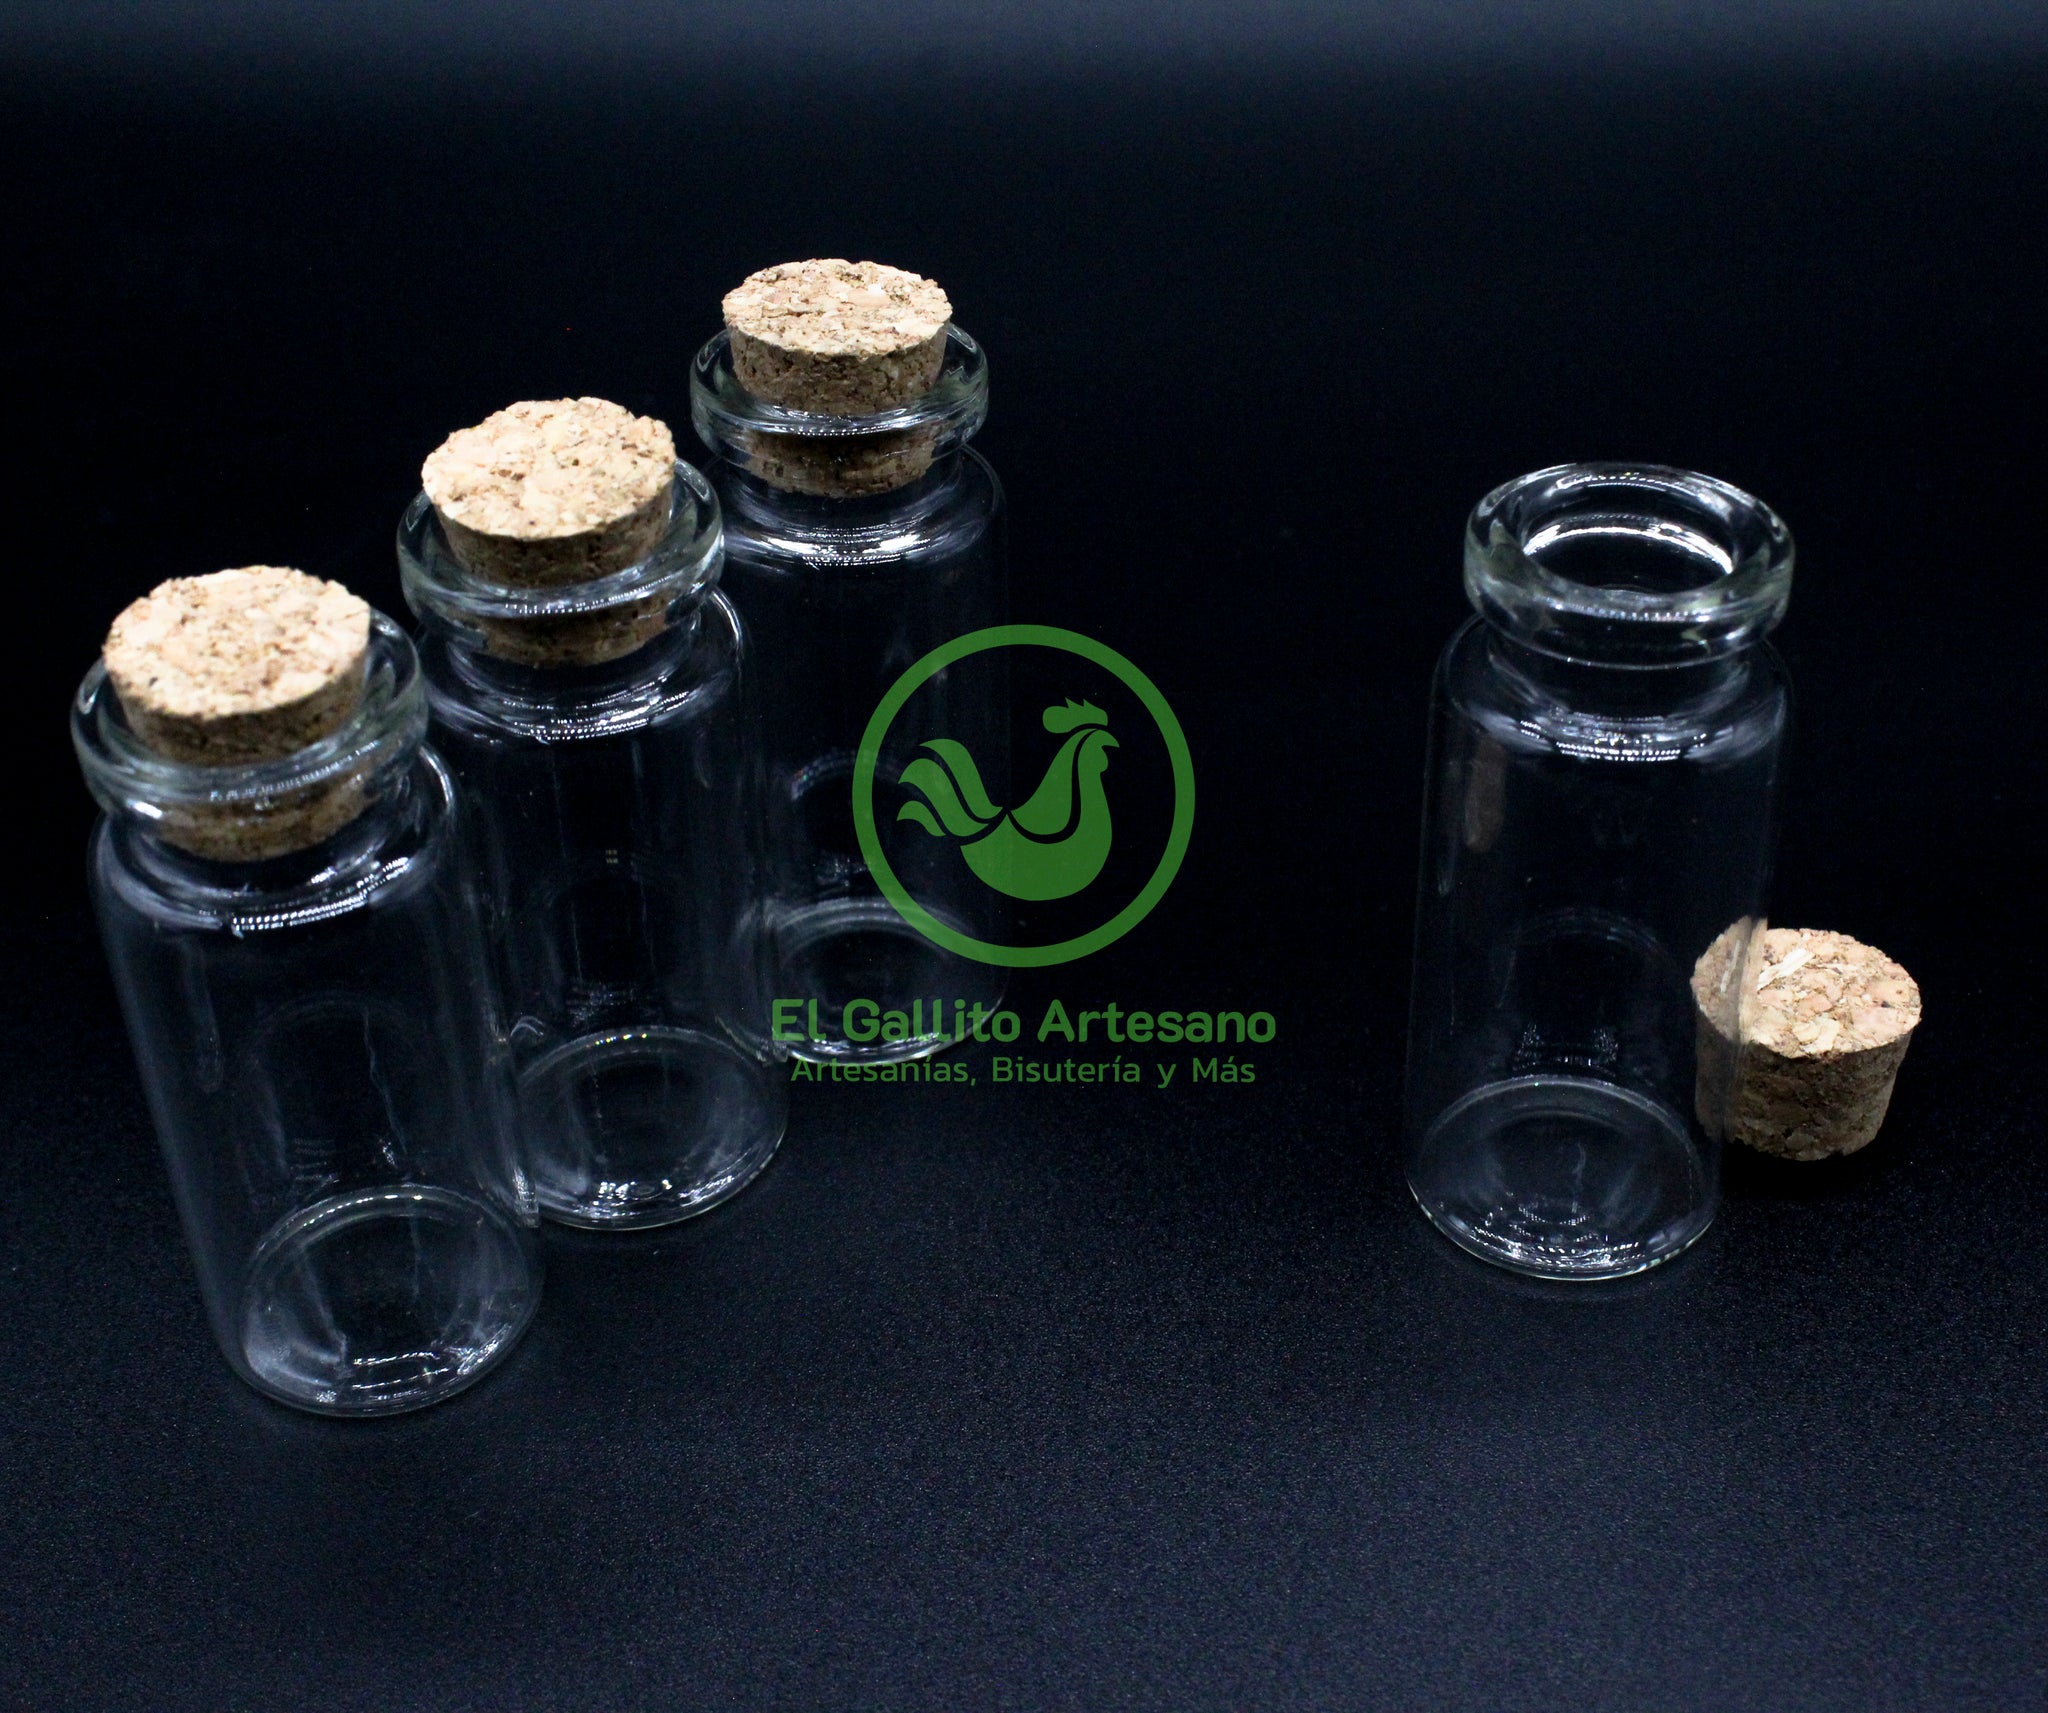 Envases de Vidrio con tapa de corcho - Set de 06pzs - Grupo Galdiaz